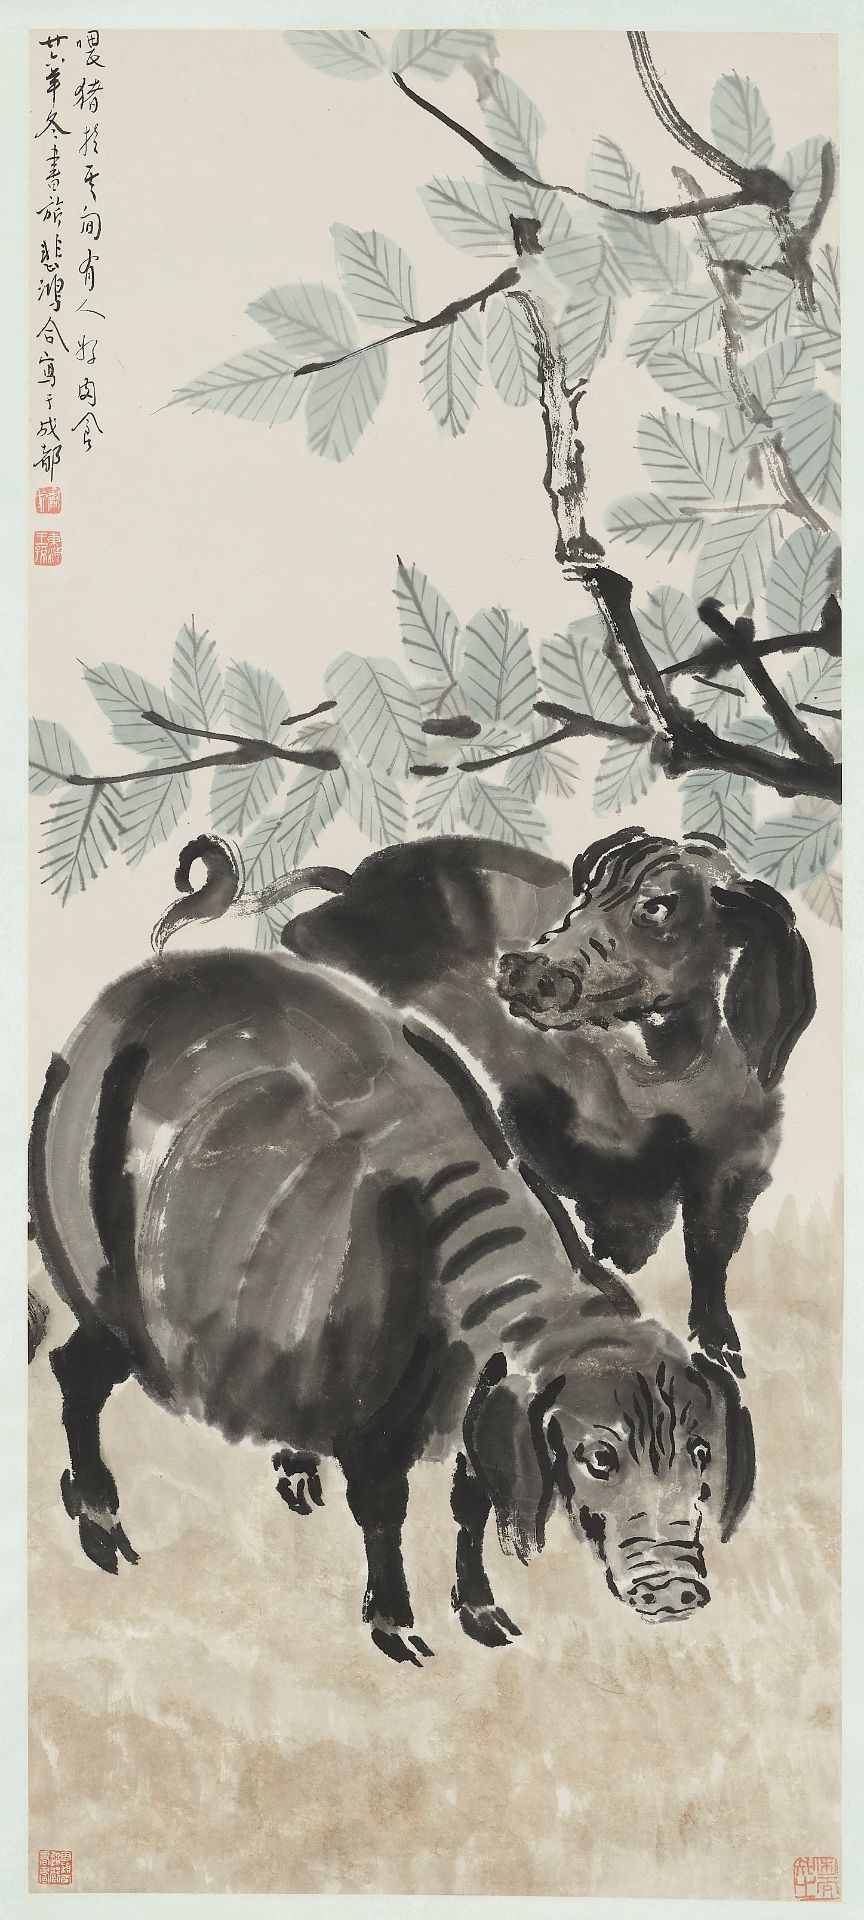 TWO PIGS', BY XU BEIHONG (1895-1953) AND ZHANG SHUQI (1899-1956), DATED 1937